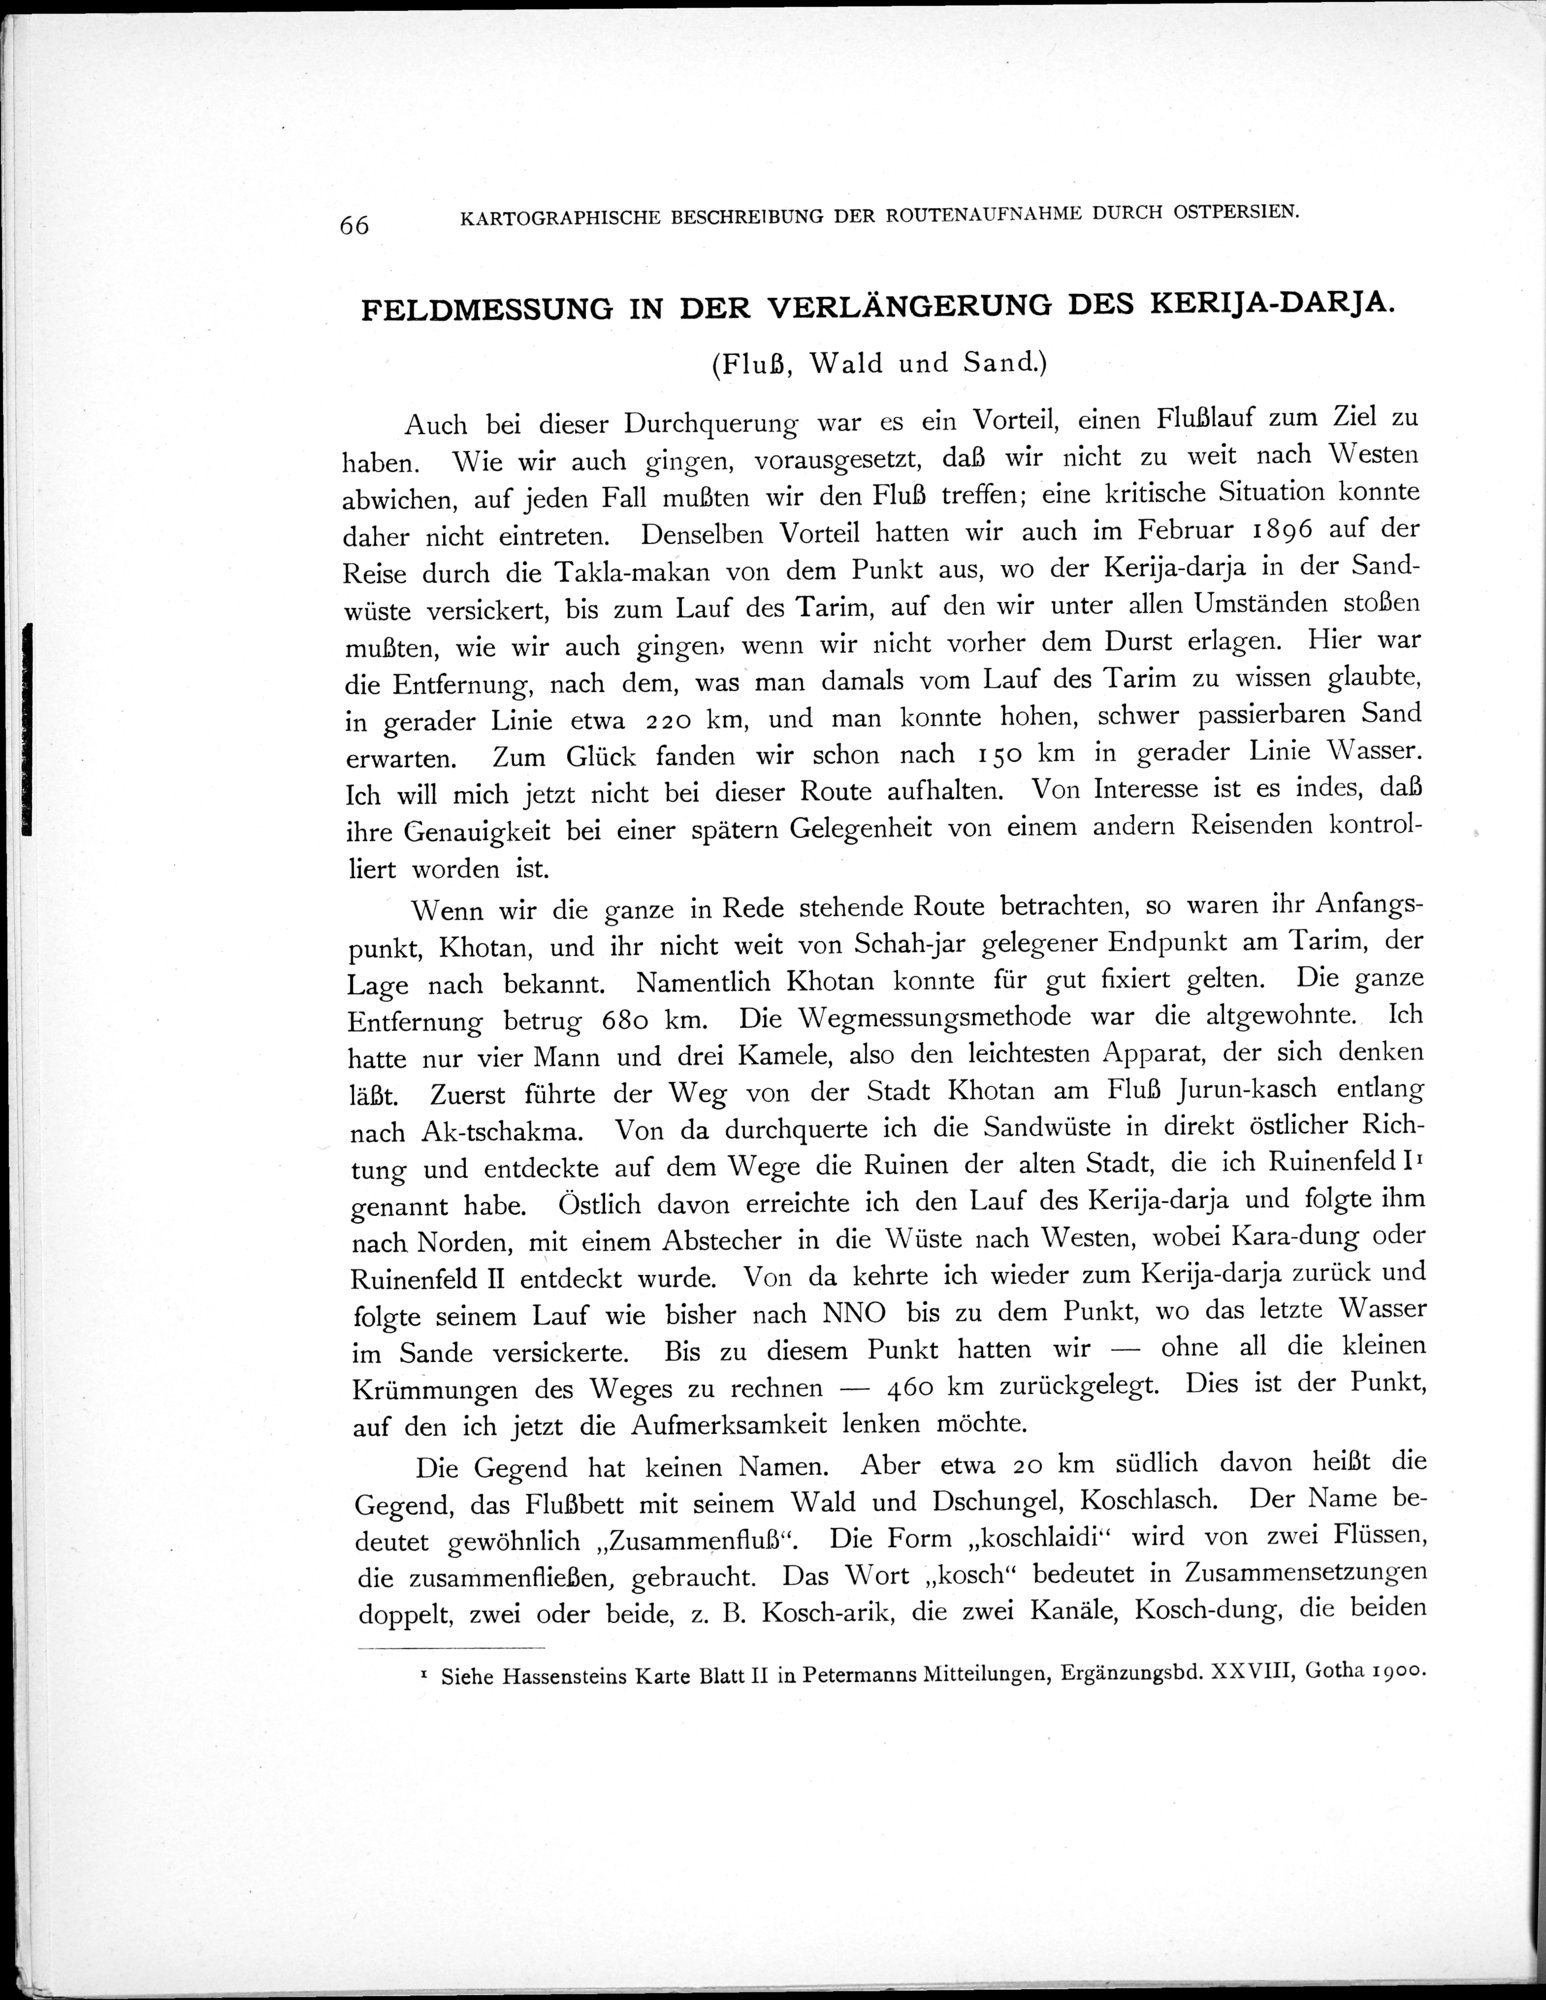 Eine Routenaufnahme durch Ostpersien : vol.2 / Page 118 (Grayscale High Resolution Image)